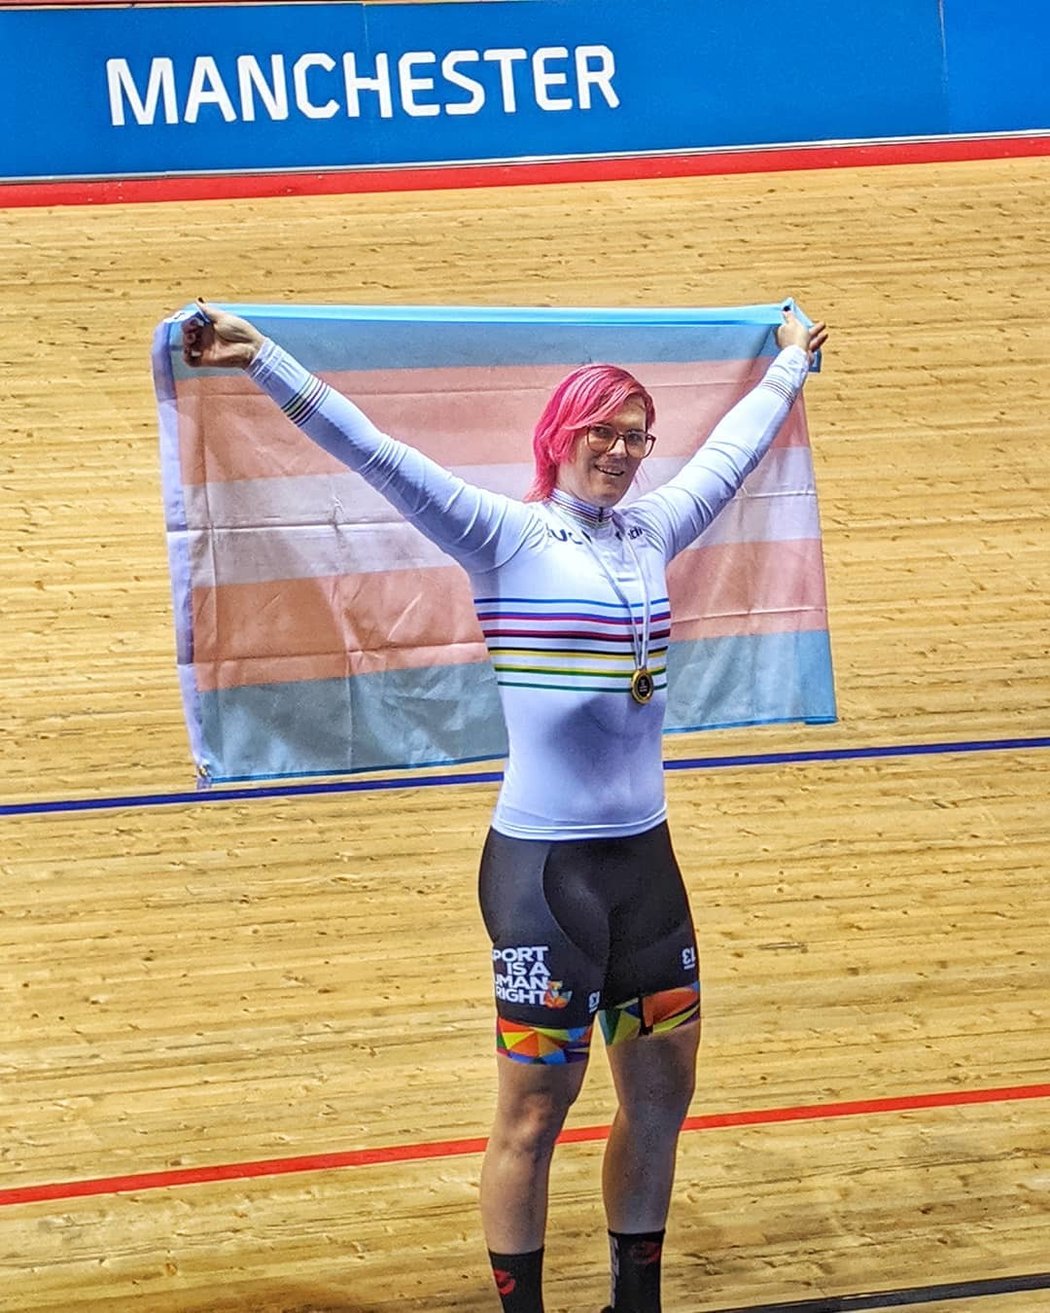 Rachel McKinnonová vyhrála tento měsíc zlato ve sprintu na mistrovství světa v dráhové cyklistice